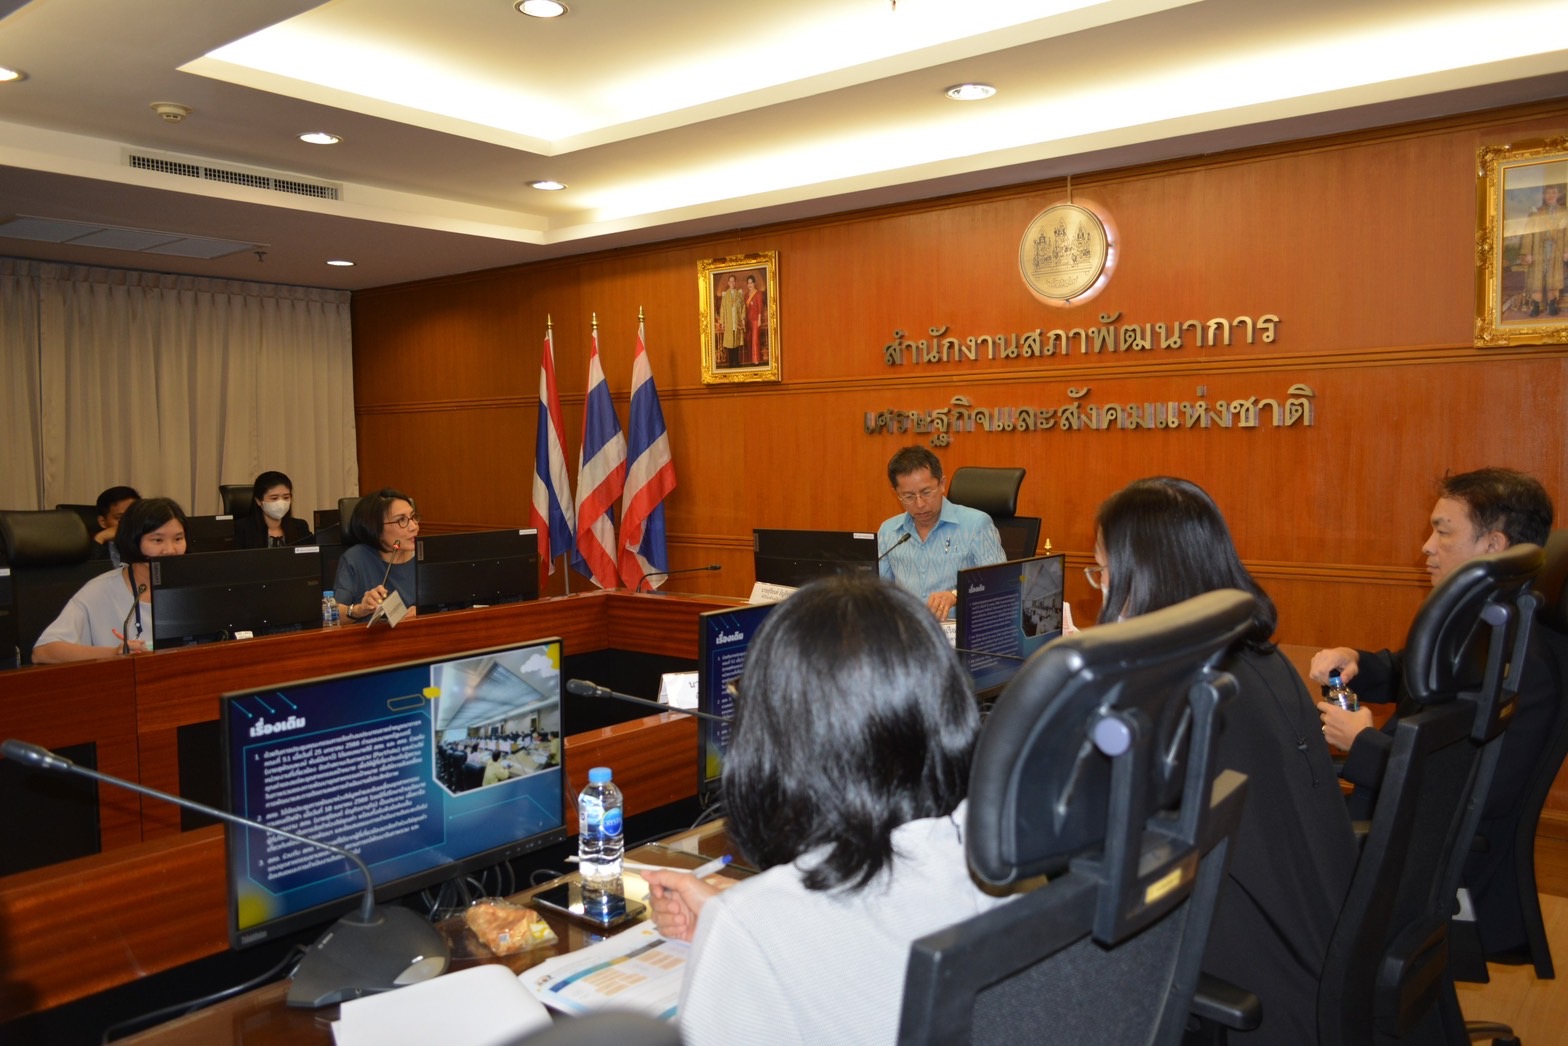 ารประชุมการรายงานผลการพัฒนาห่วงโซ่มูลค่าอุตสาหกรรมยานยนต์ไฟฟ้าของประเทศไทย